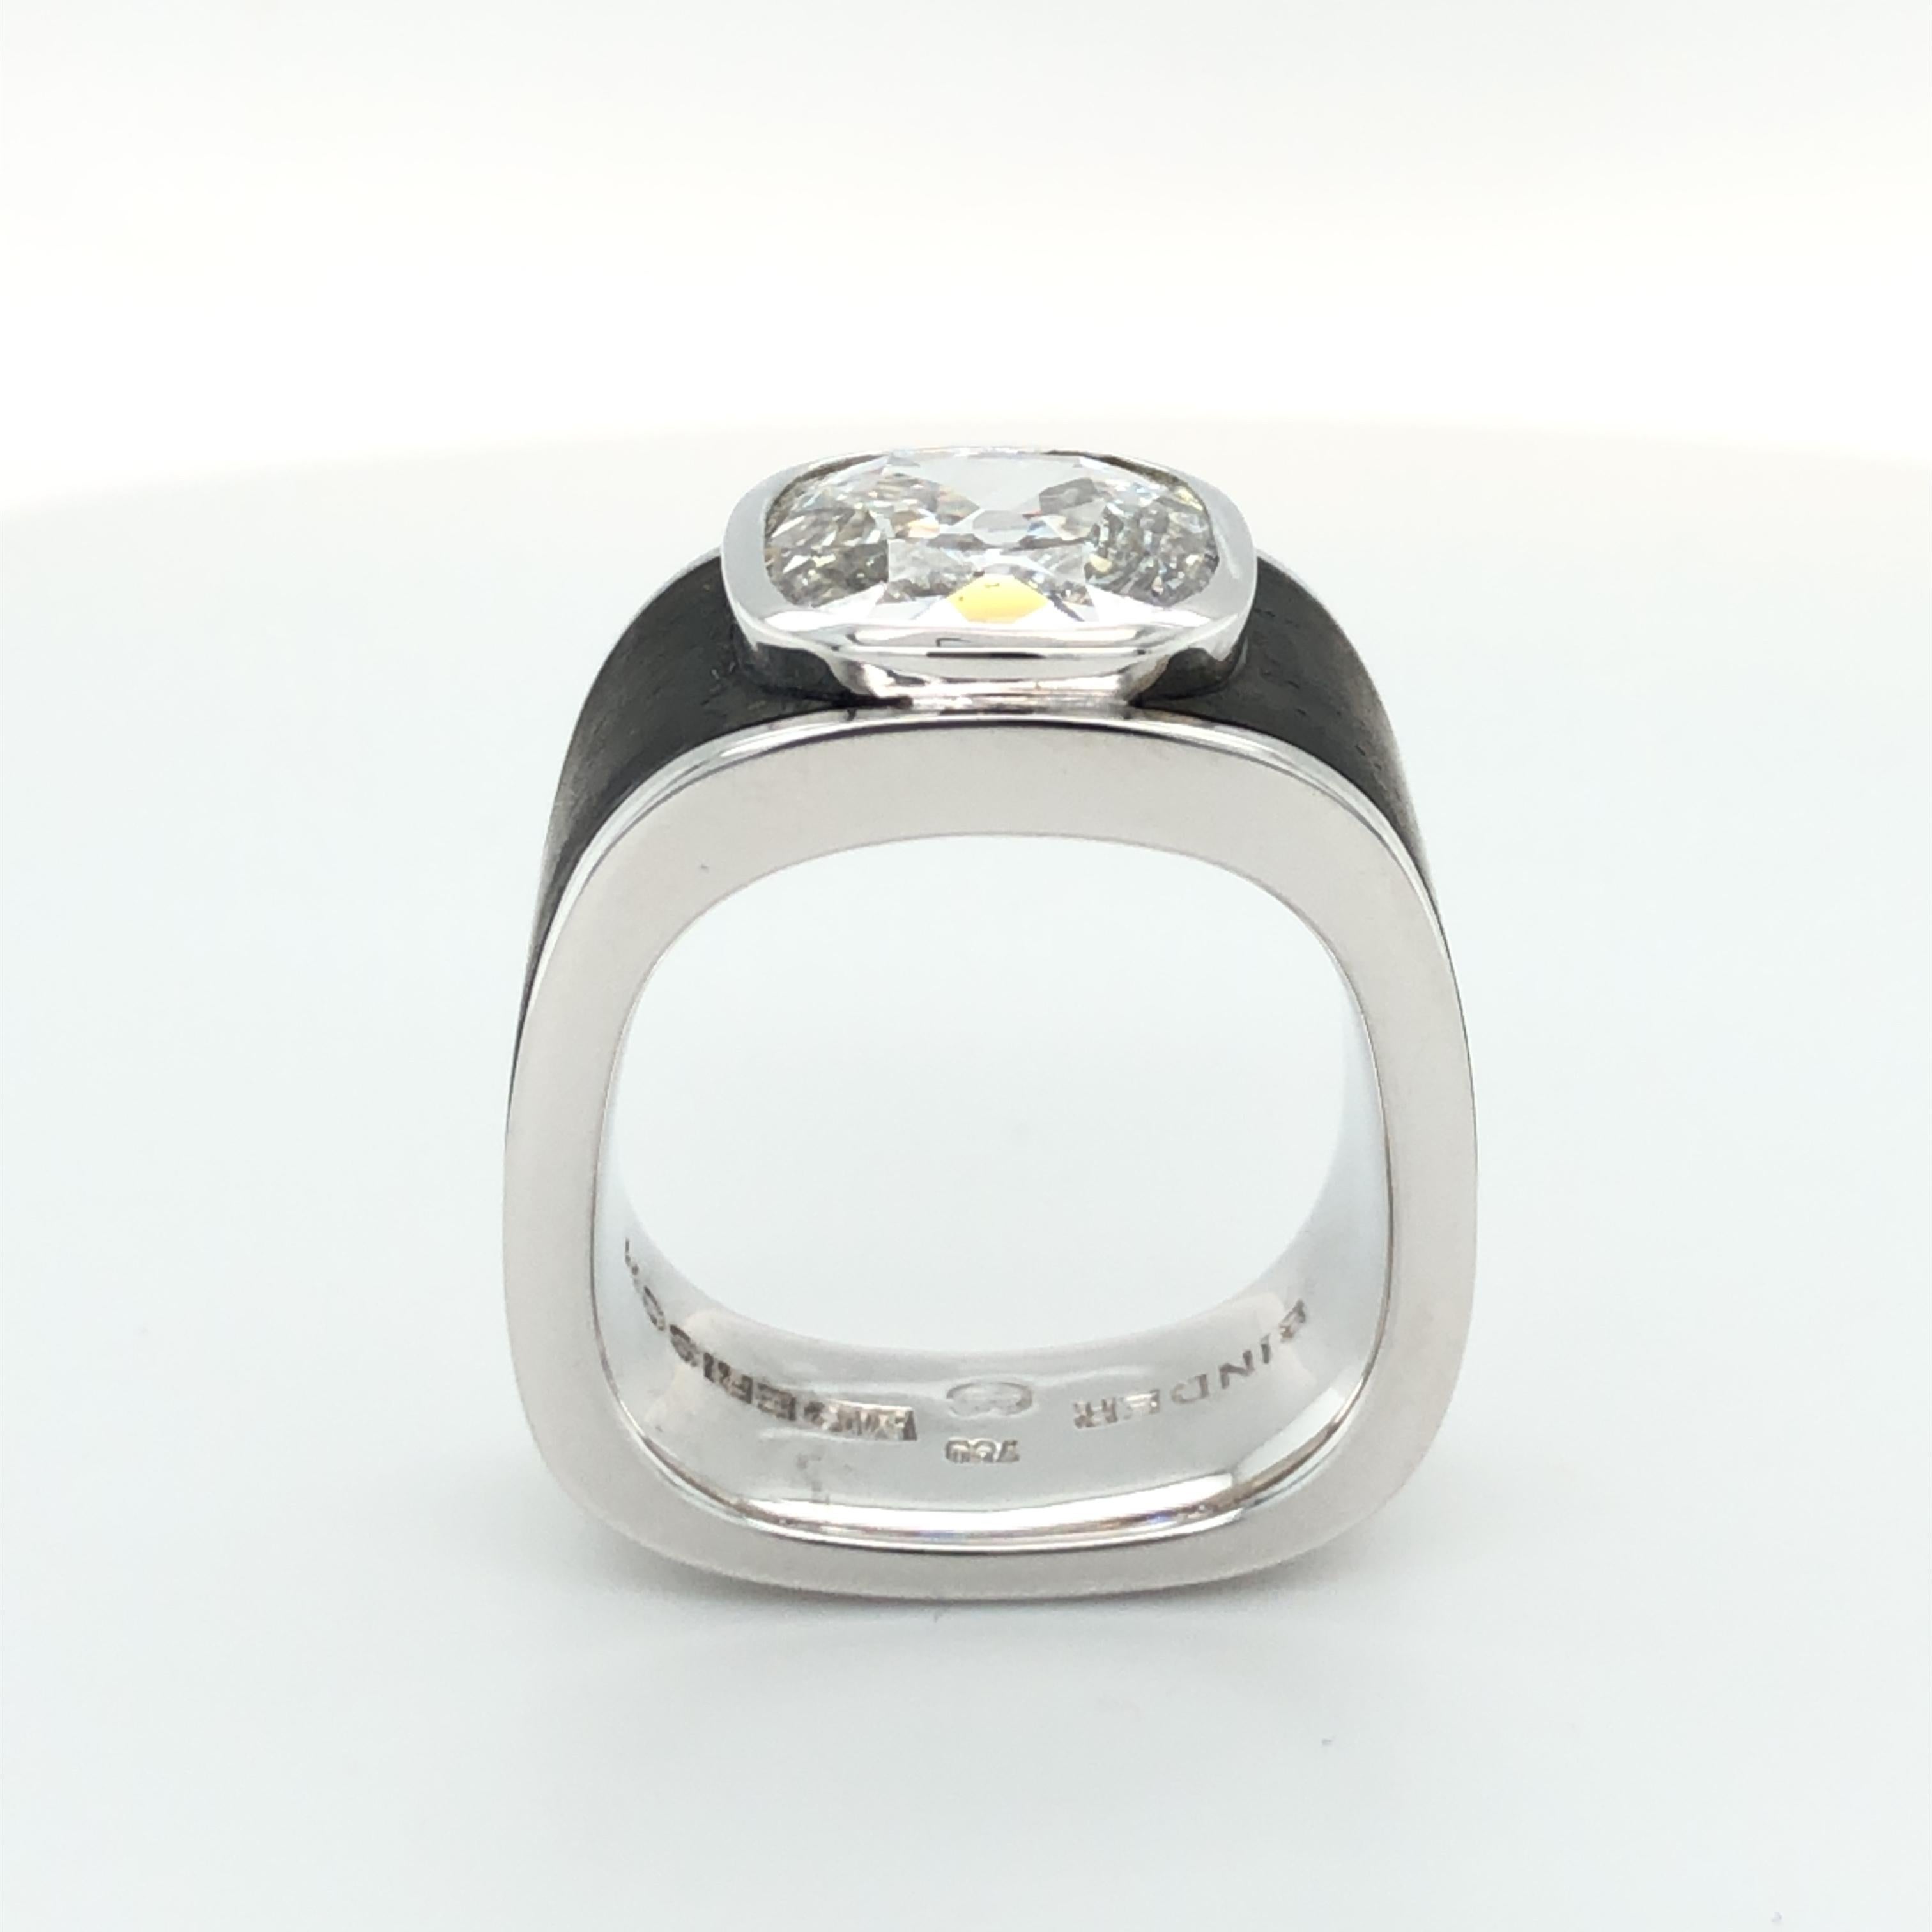 Binder Moerisch 3.41 Carat Diamond Ring in 18 Karat White Gold and Carbon 2